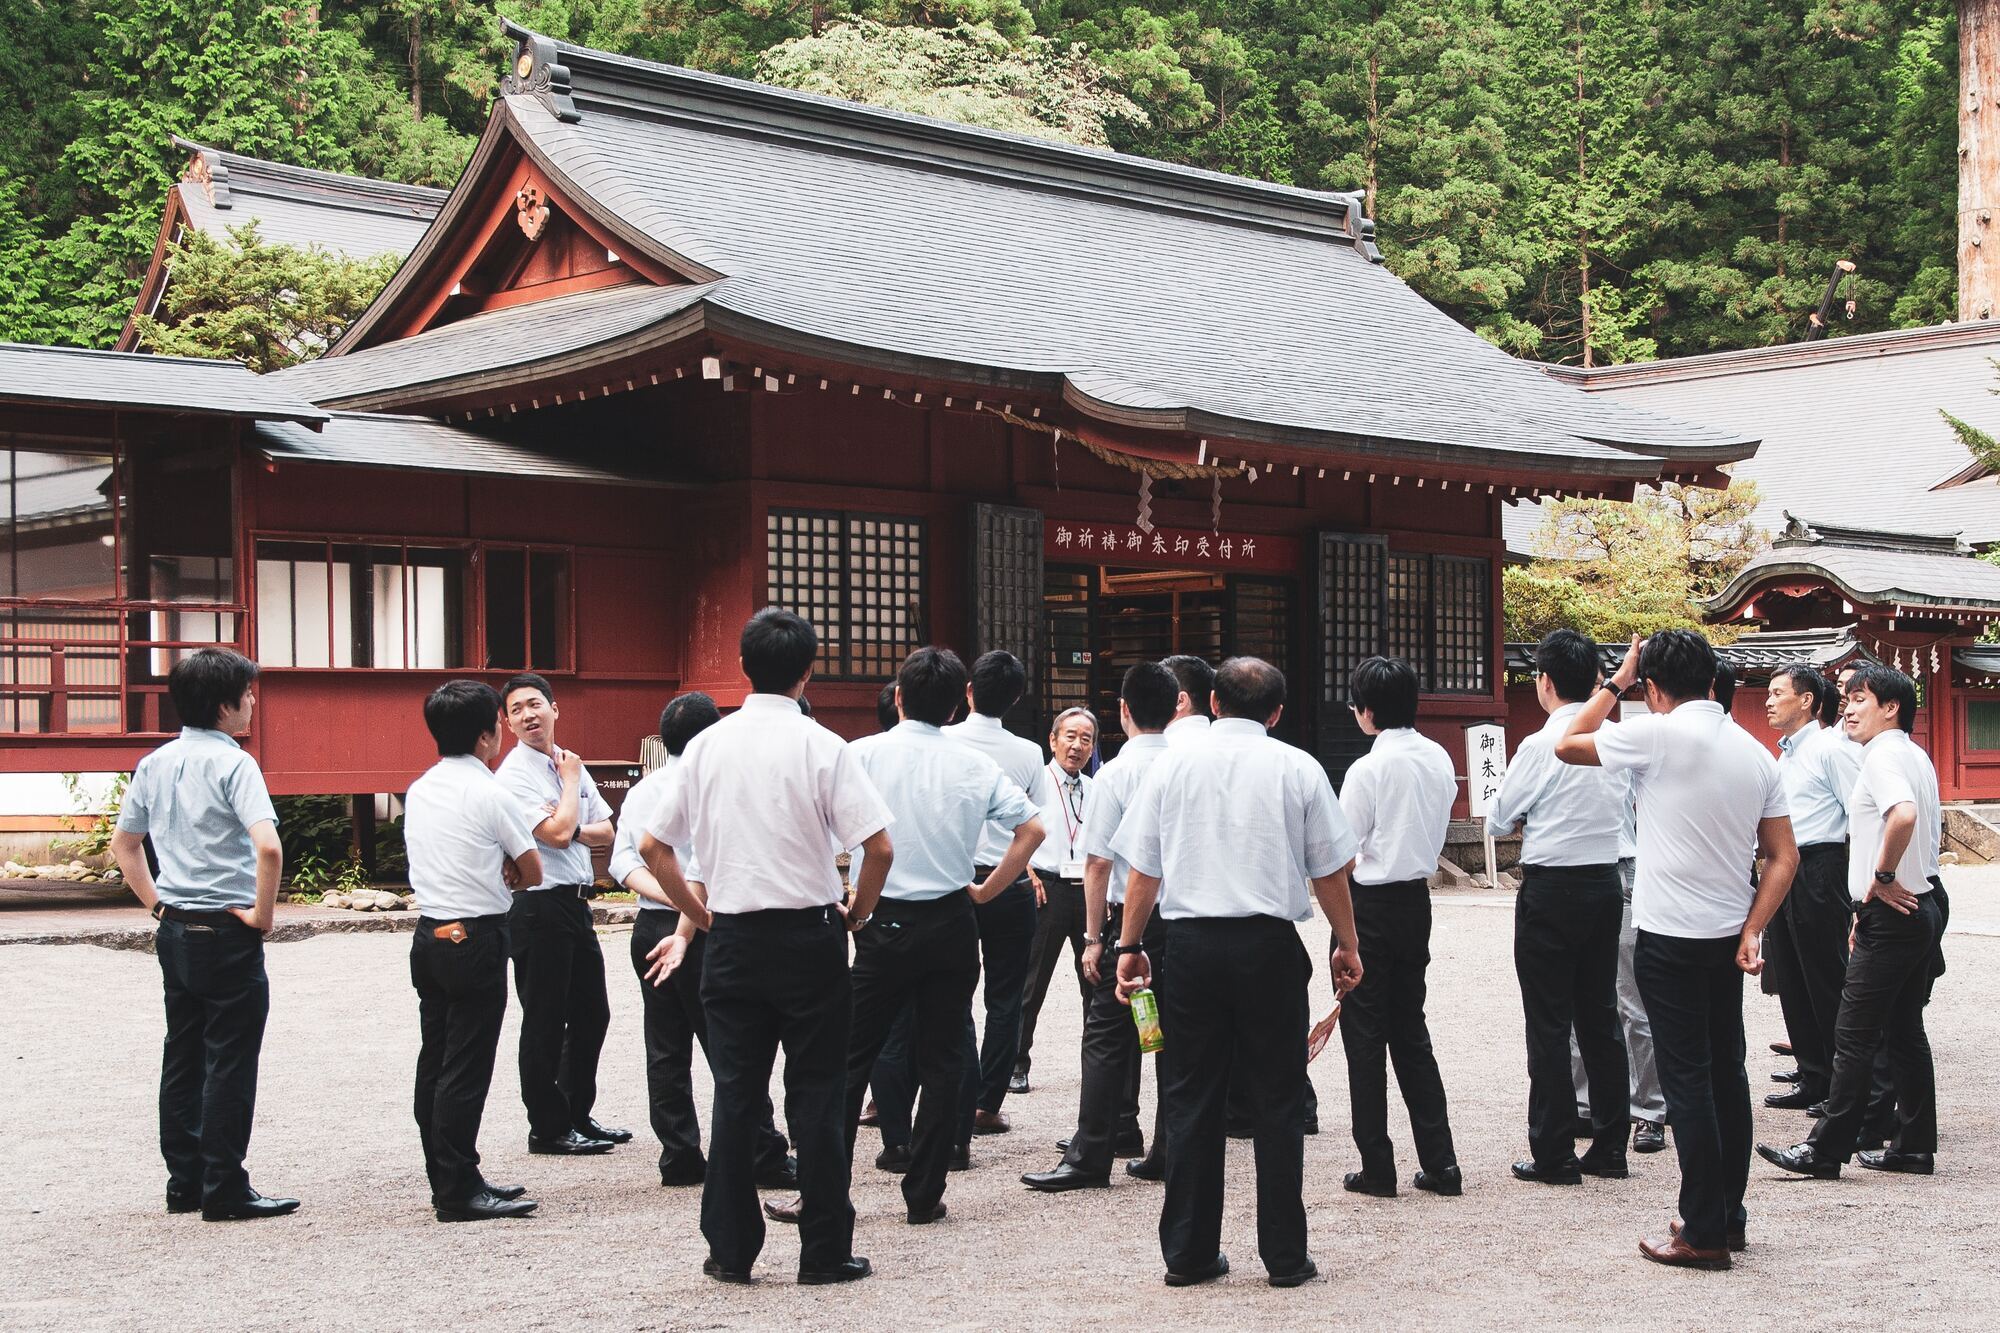 Роботи-офіціанти, вражаючі хмарочоси та старовинні храми: чим дивує туристів Токіо 